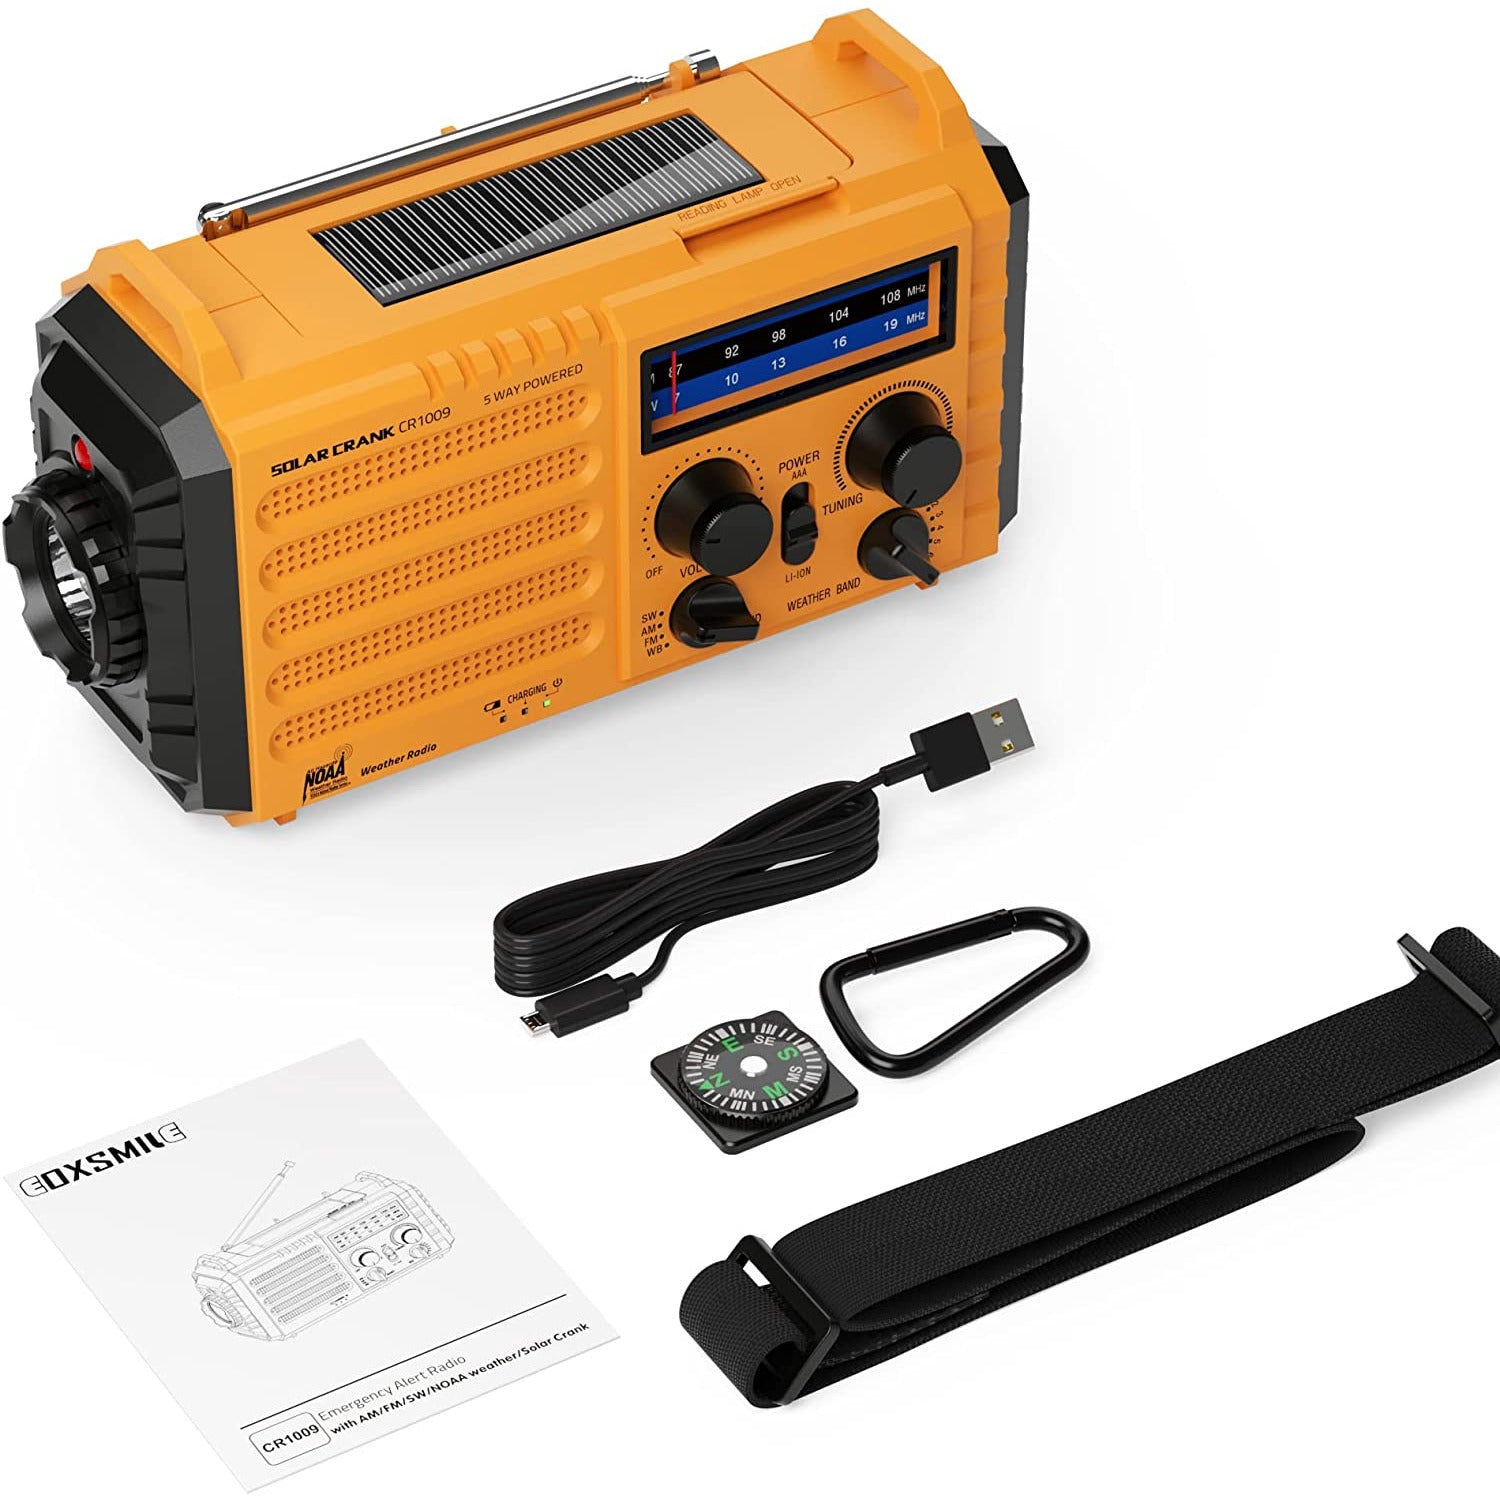 Multifunctioneel - Noodweer Radio met NOAA/AM/FM - Solar Handzwengel Radio - 5000mAh Oplaadbare Batterij - Draagbare Noodradio met LED Zaklamp - SOS Alarm voor Thuis of Noodgevallen - Geel